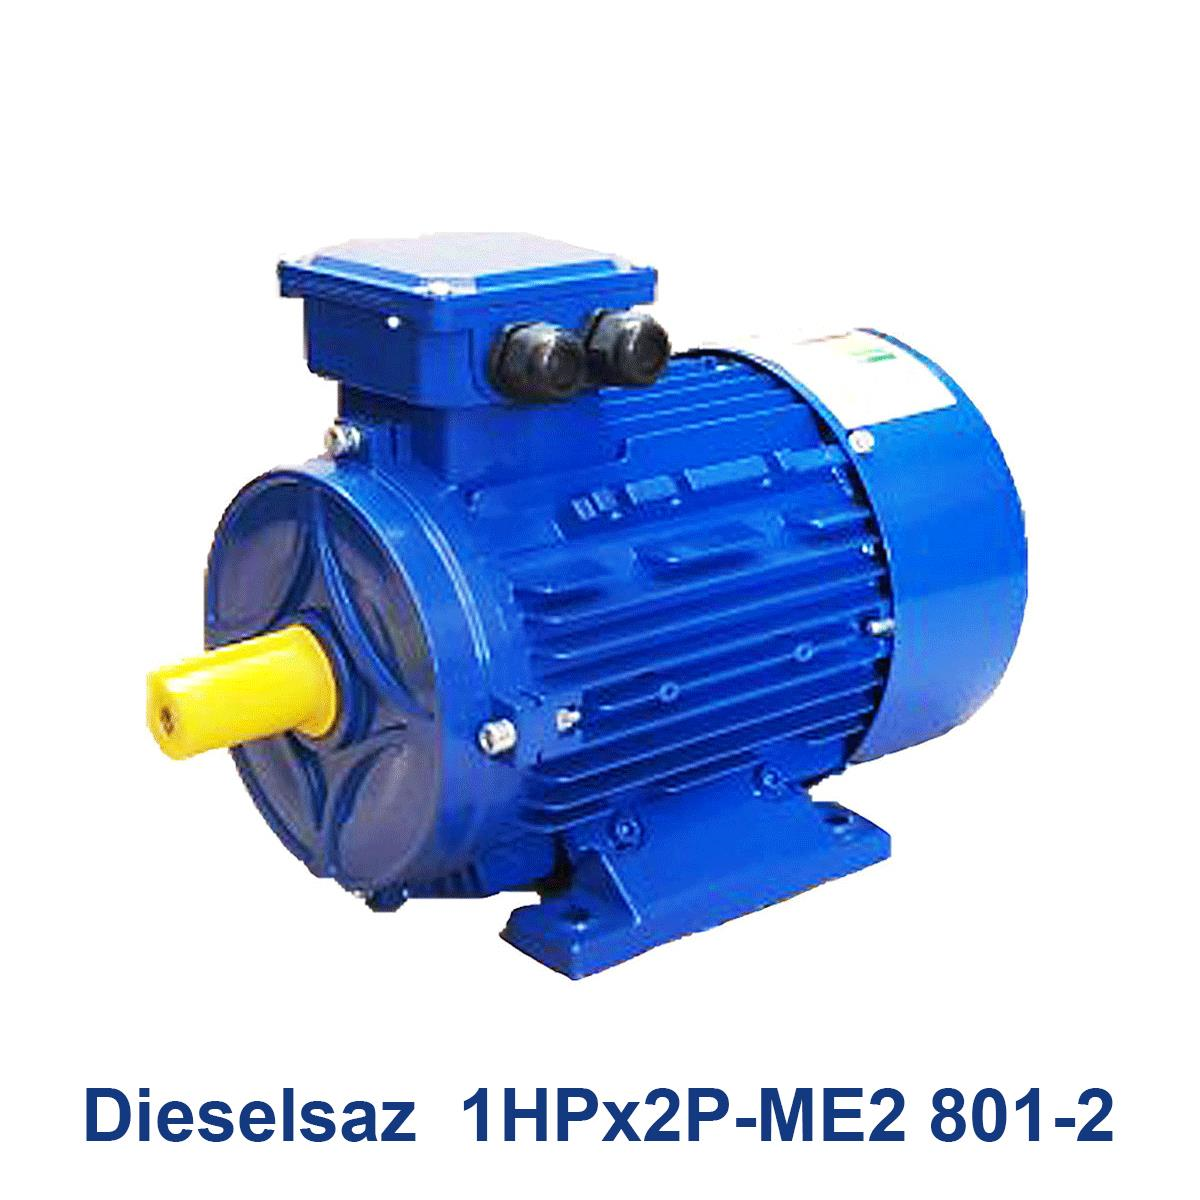 Dieselsaz--1HPx2P-ME2-801-2